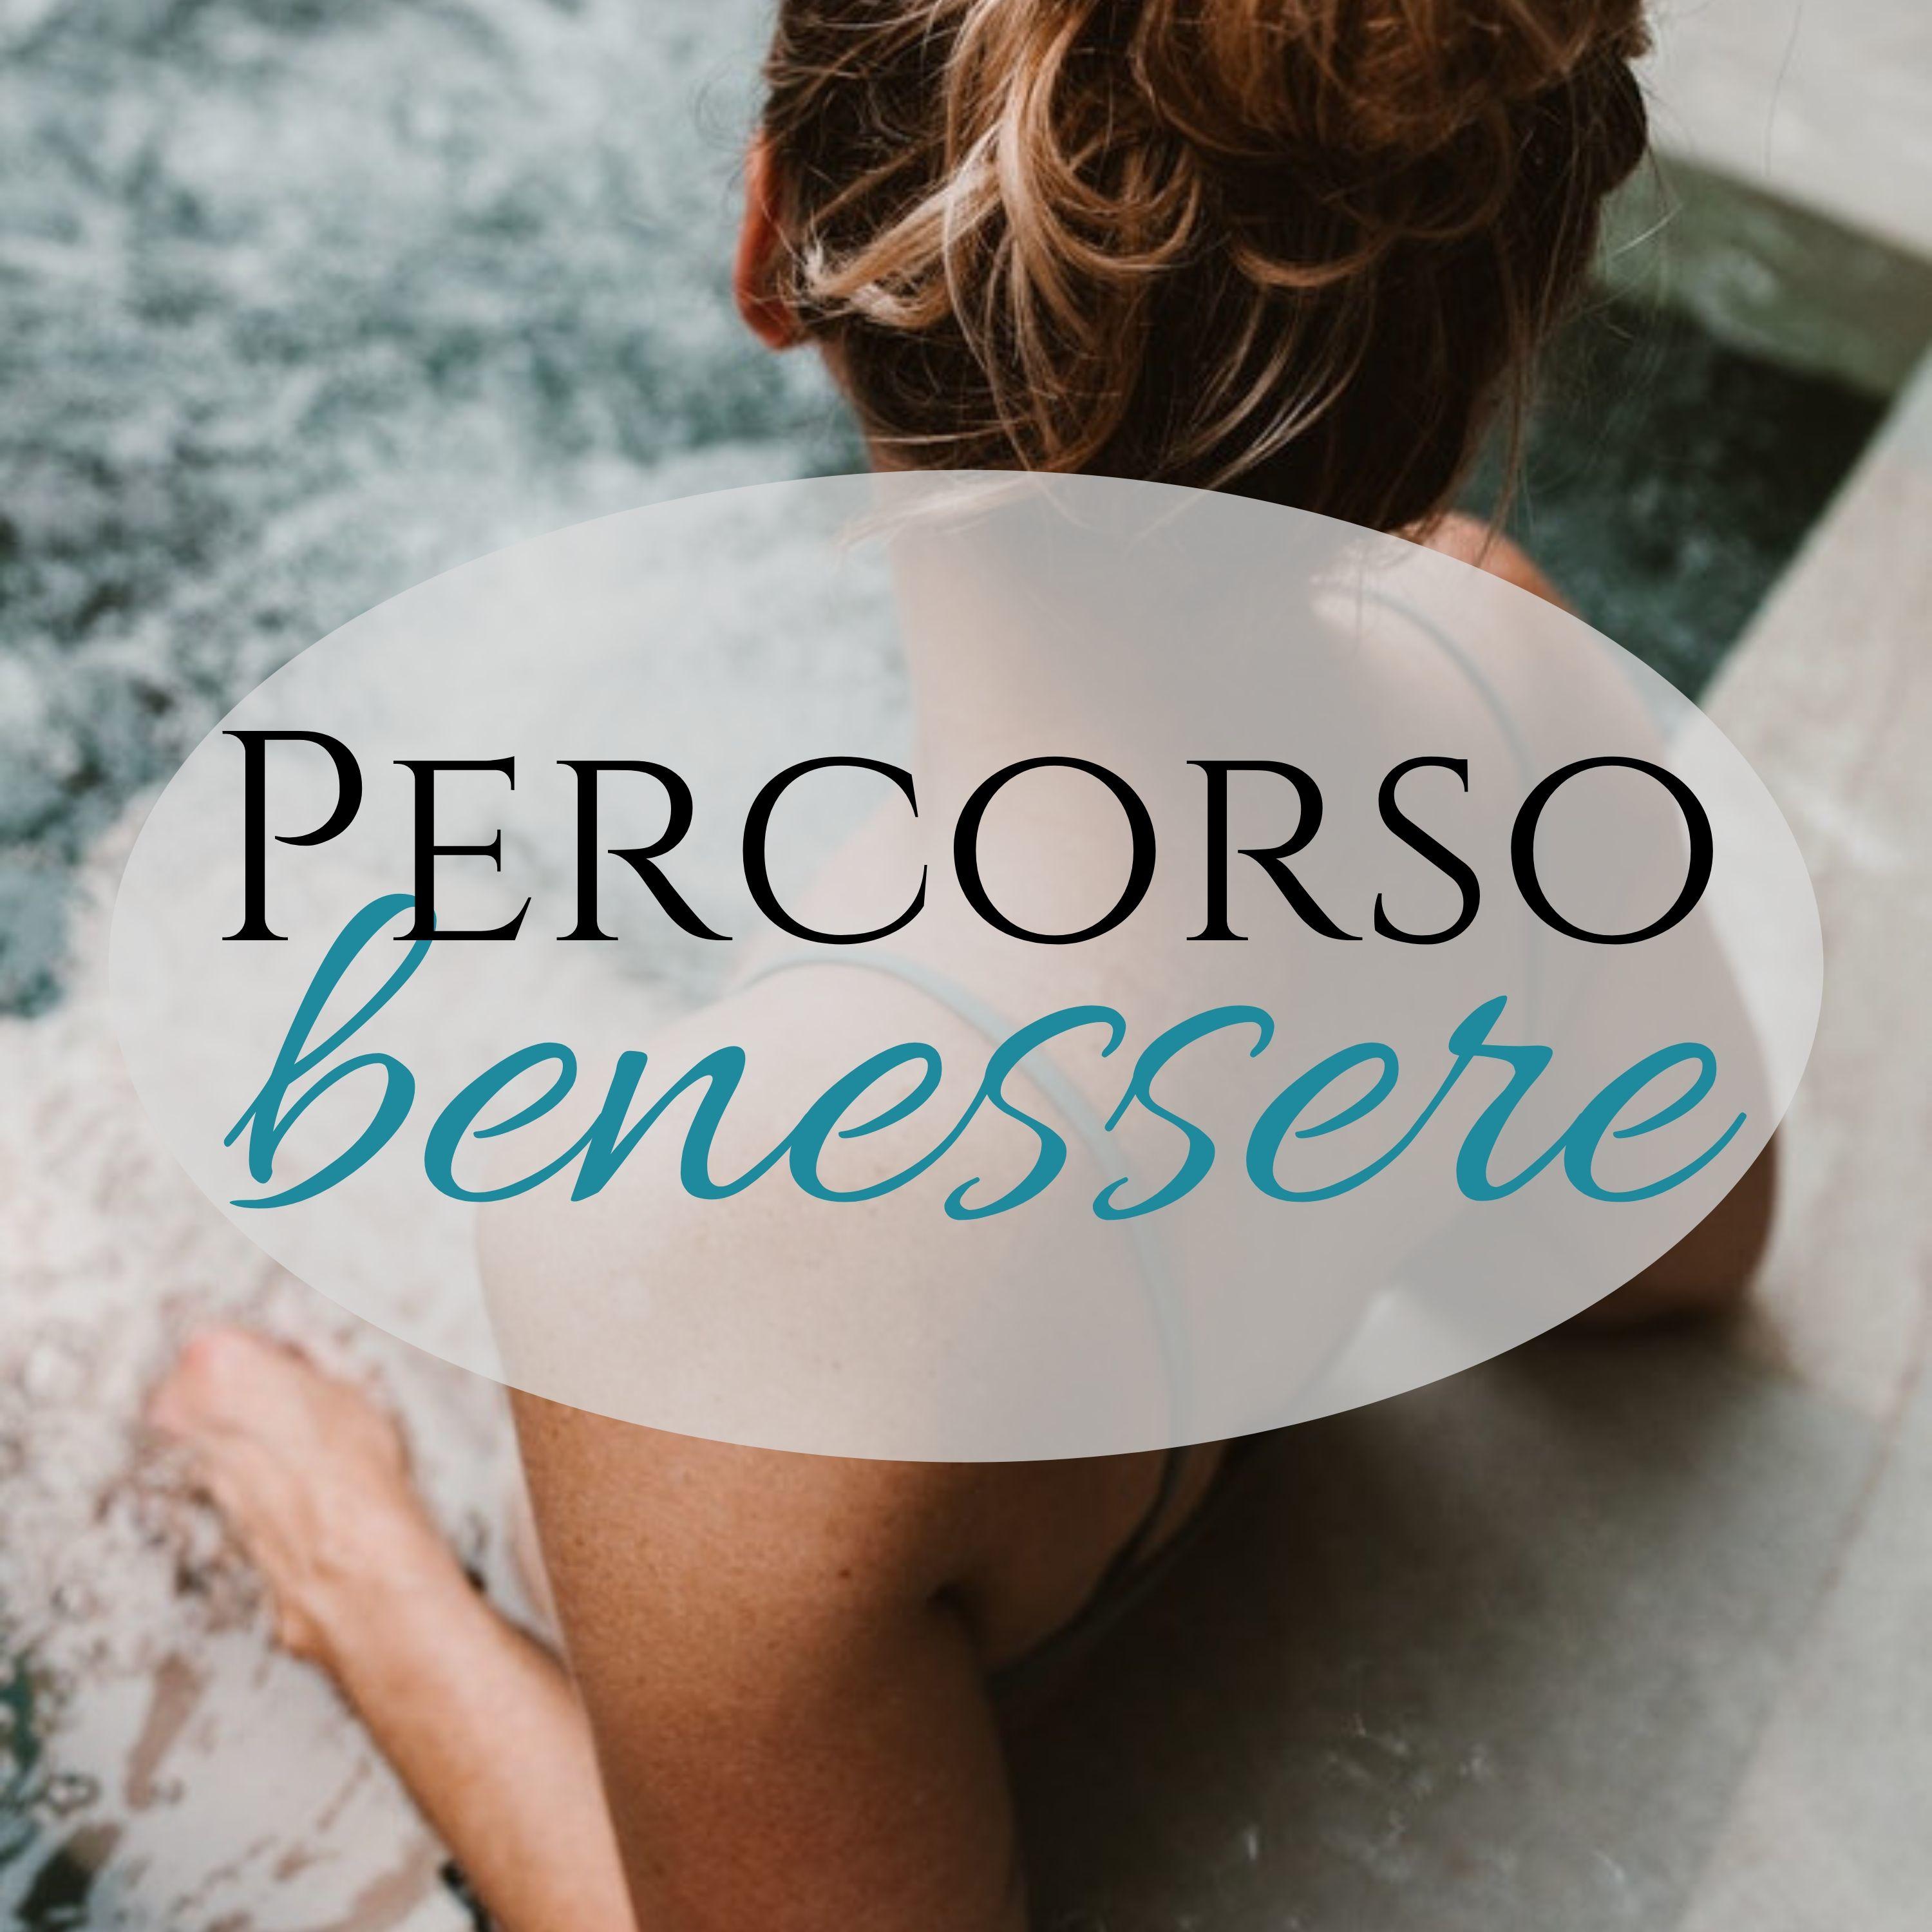 Percorso Benessere: musica strumentale new age per spa, sauna, sala relax, massaggi